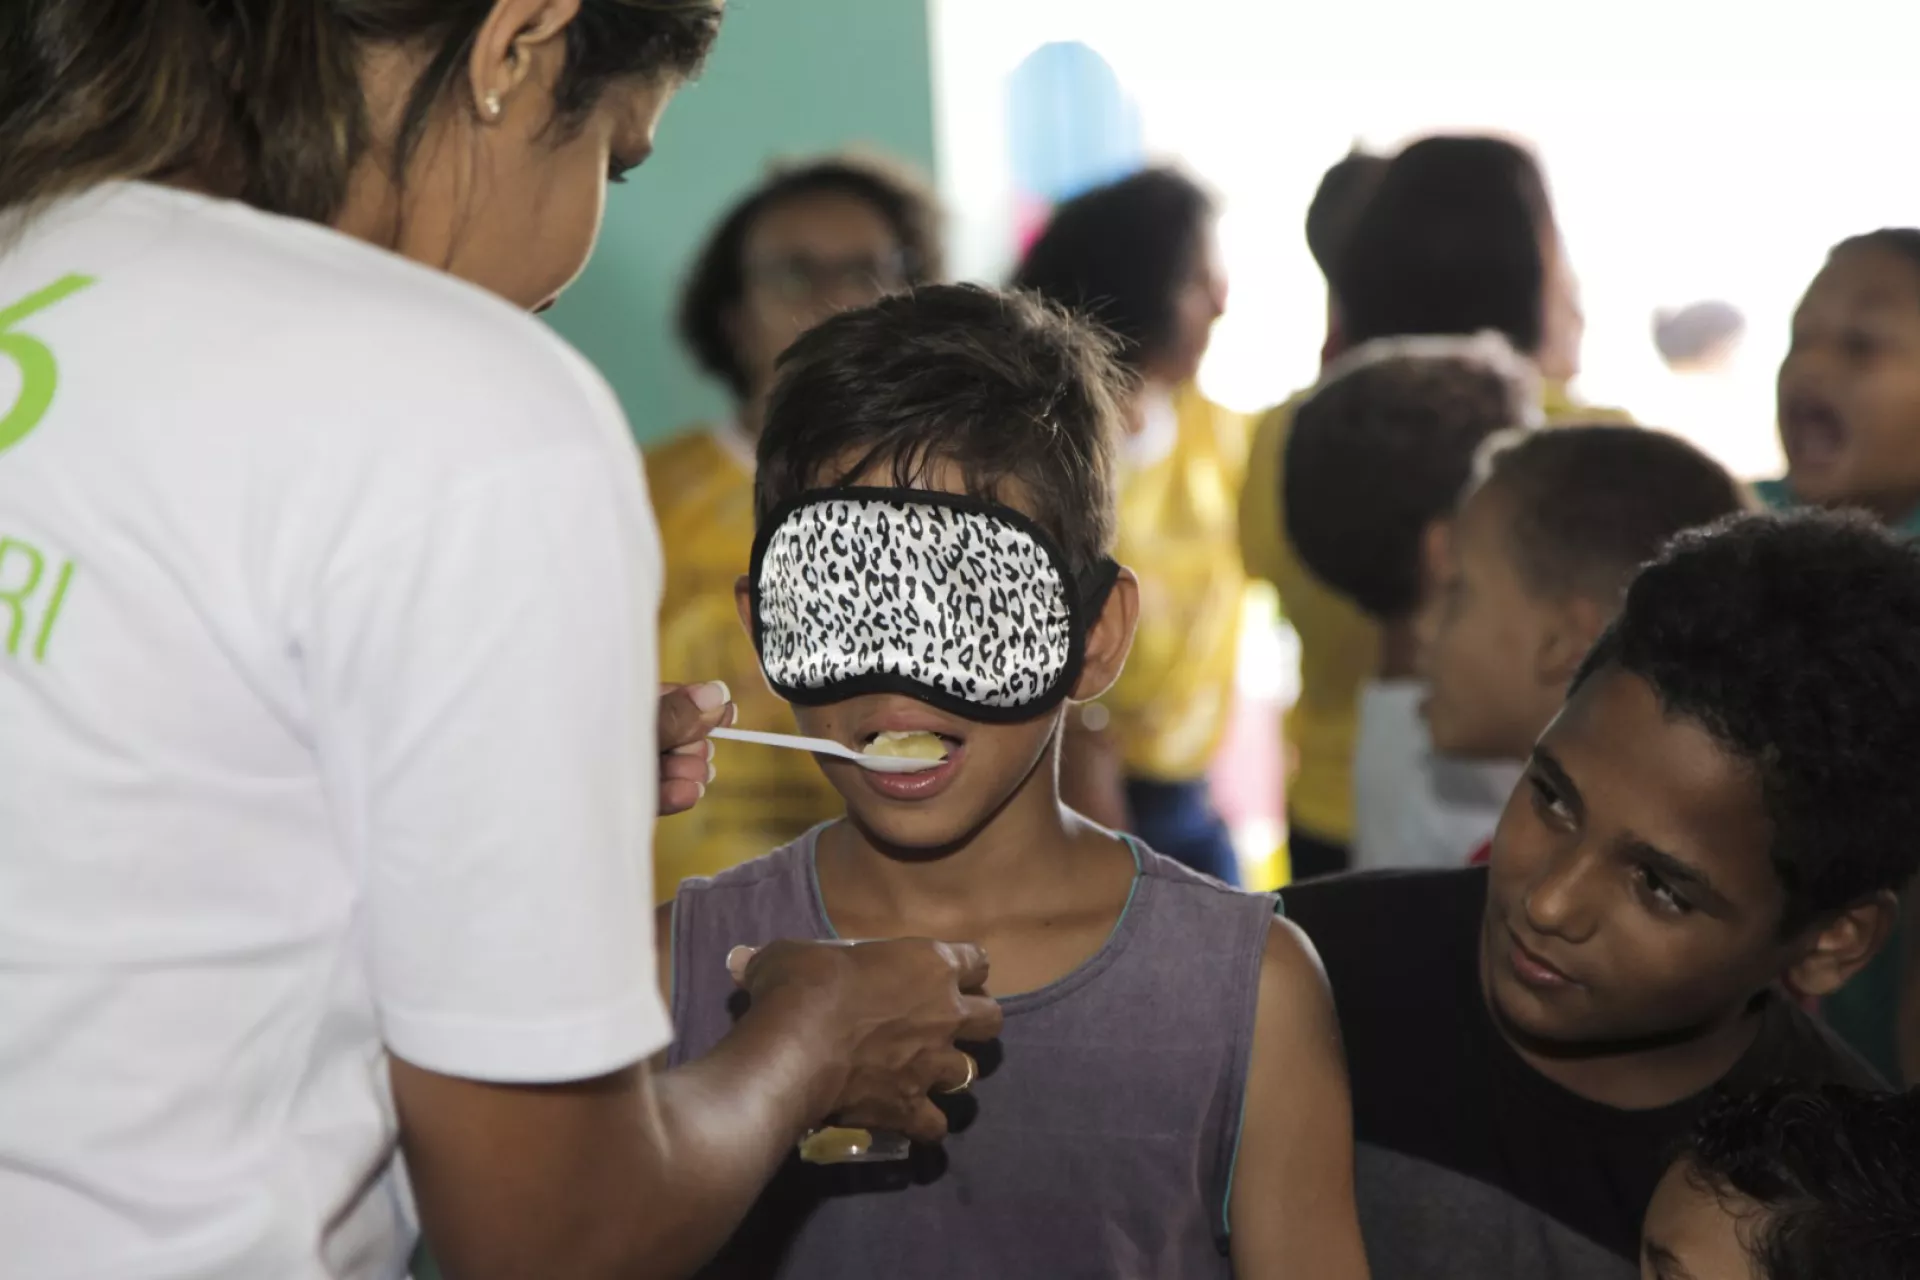 menino com olhos vendados prova uma fruta dada por uma profissional de saúde. Outras crianças estão em volta dele.